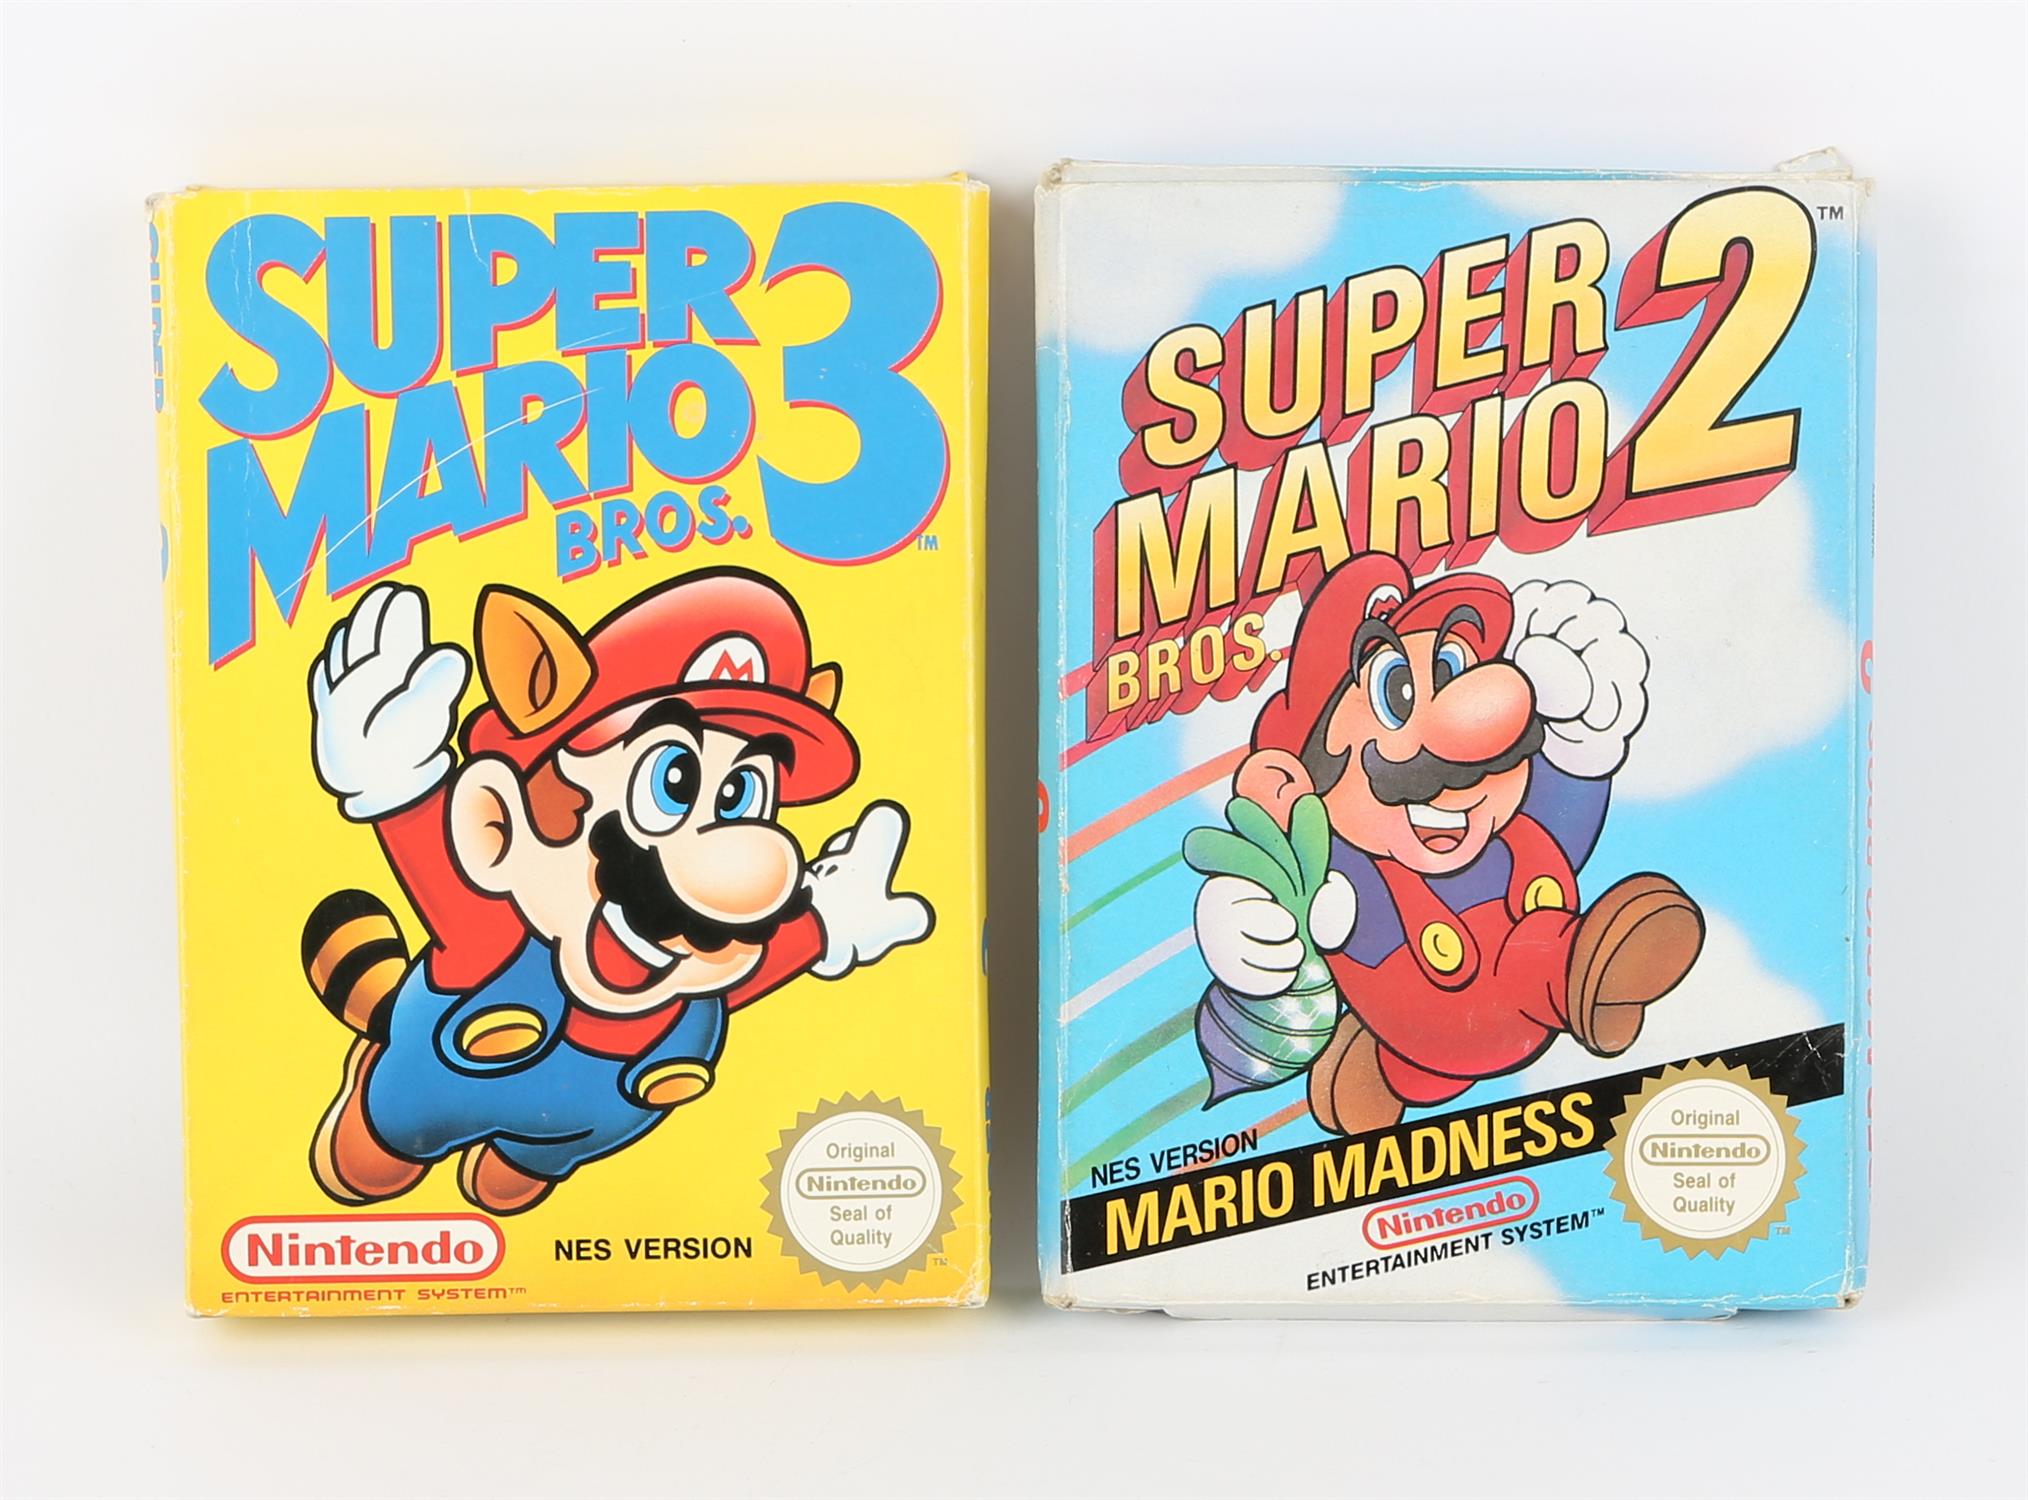 Nintendo Entertainment System (NES) Mario Bros. bundle Games include: Super Mario Bros.